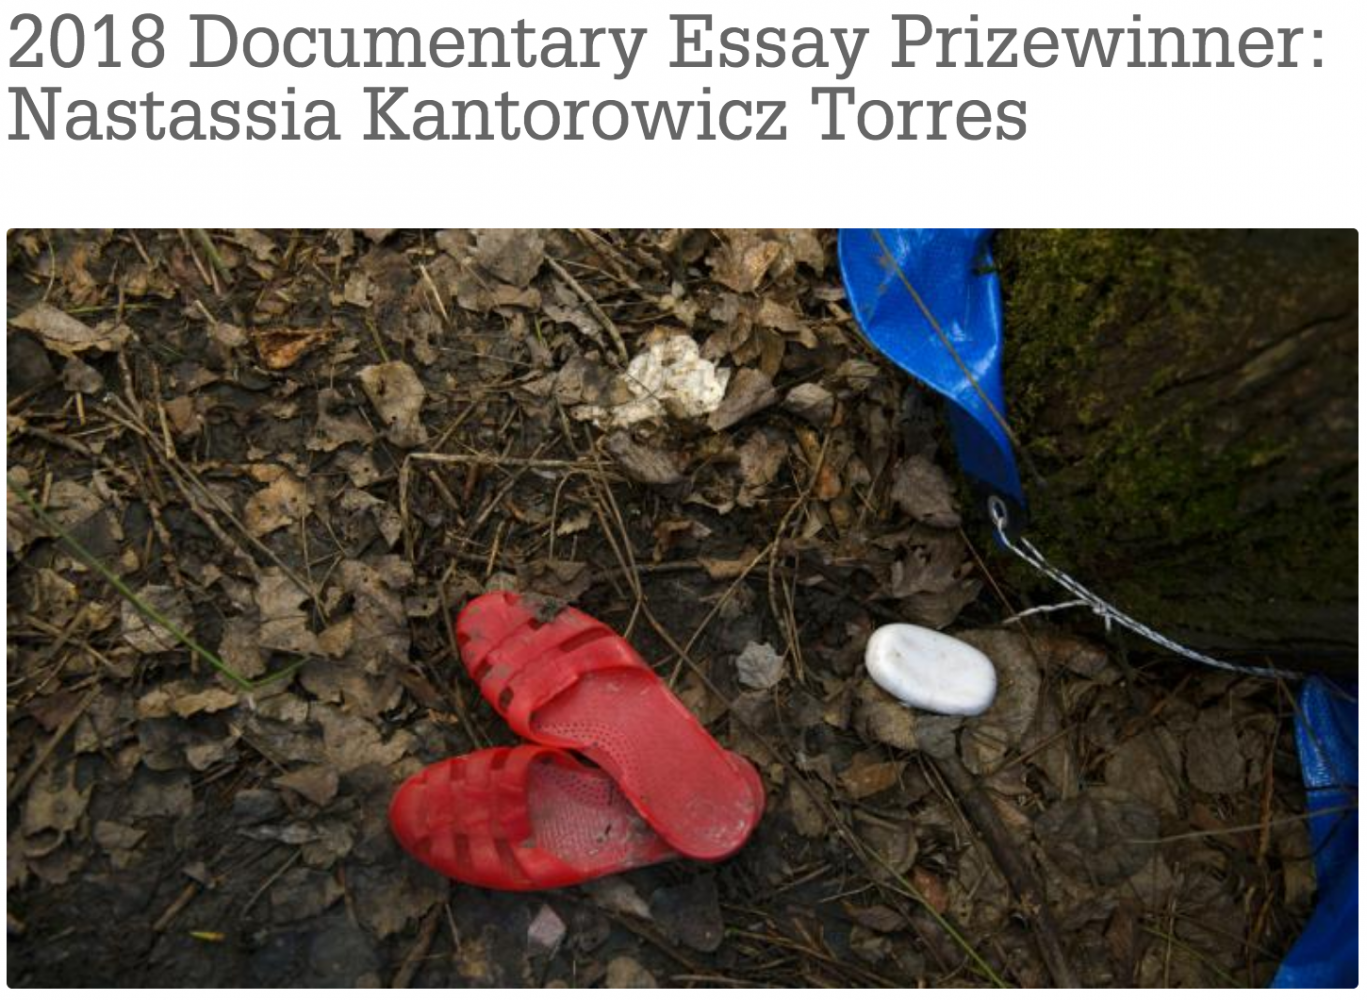 2018 Documentary Essay Prizewinner- Center for Documentary Studies at Duke University